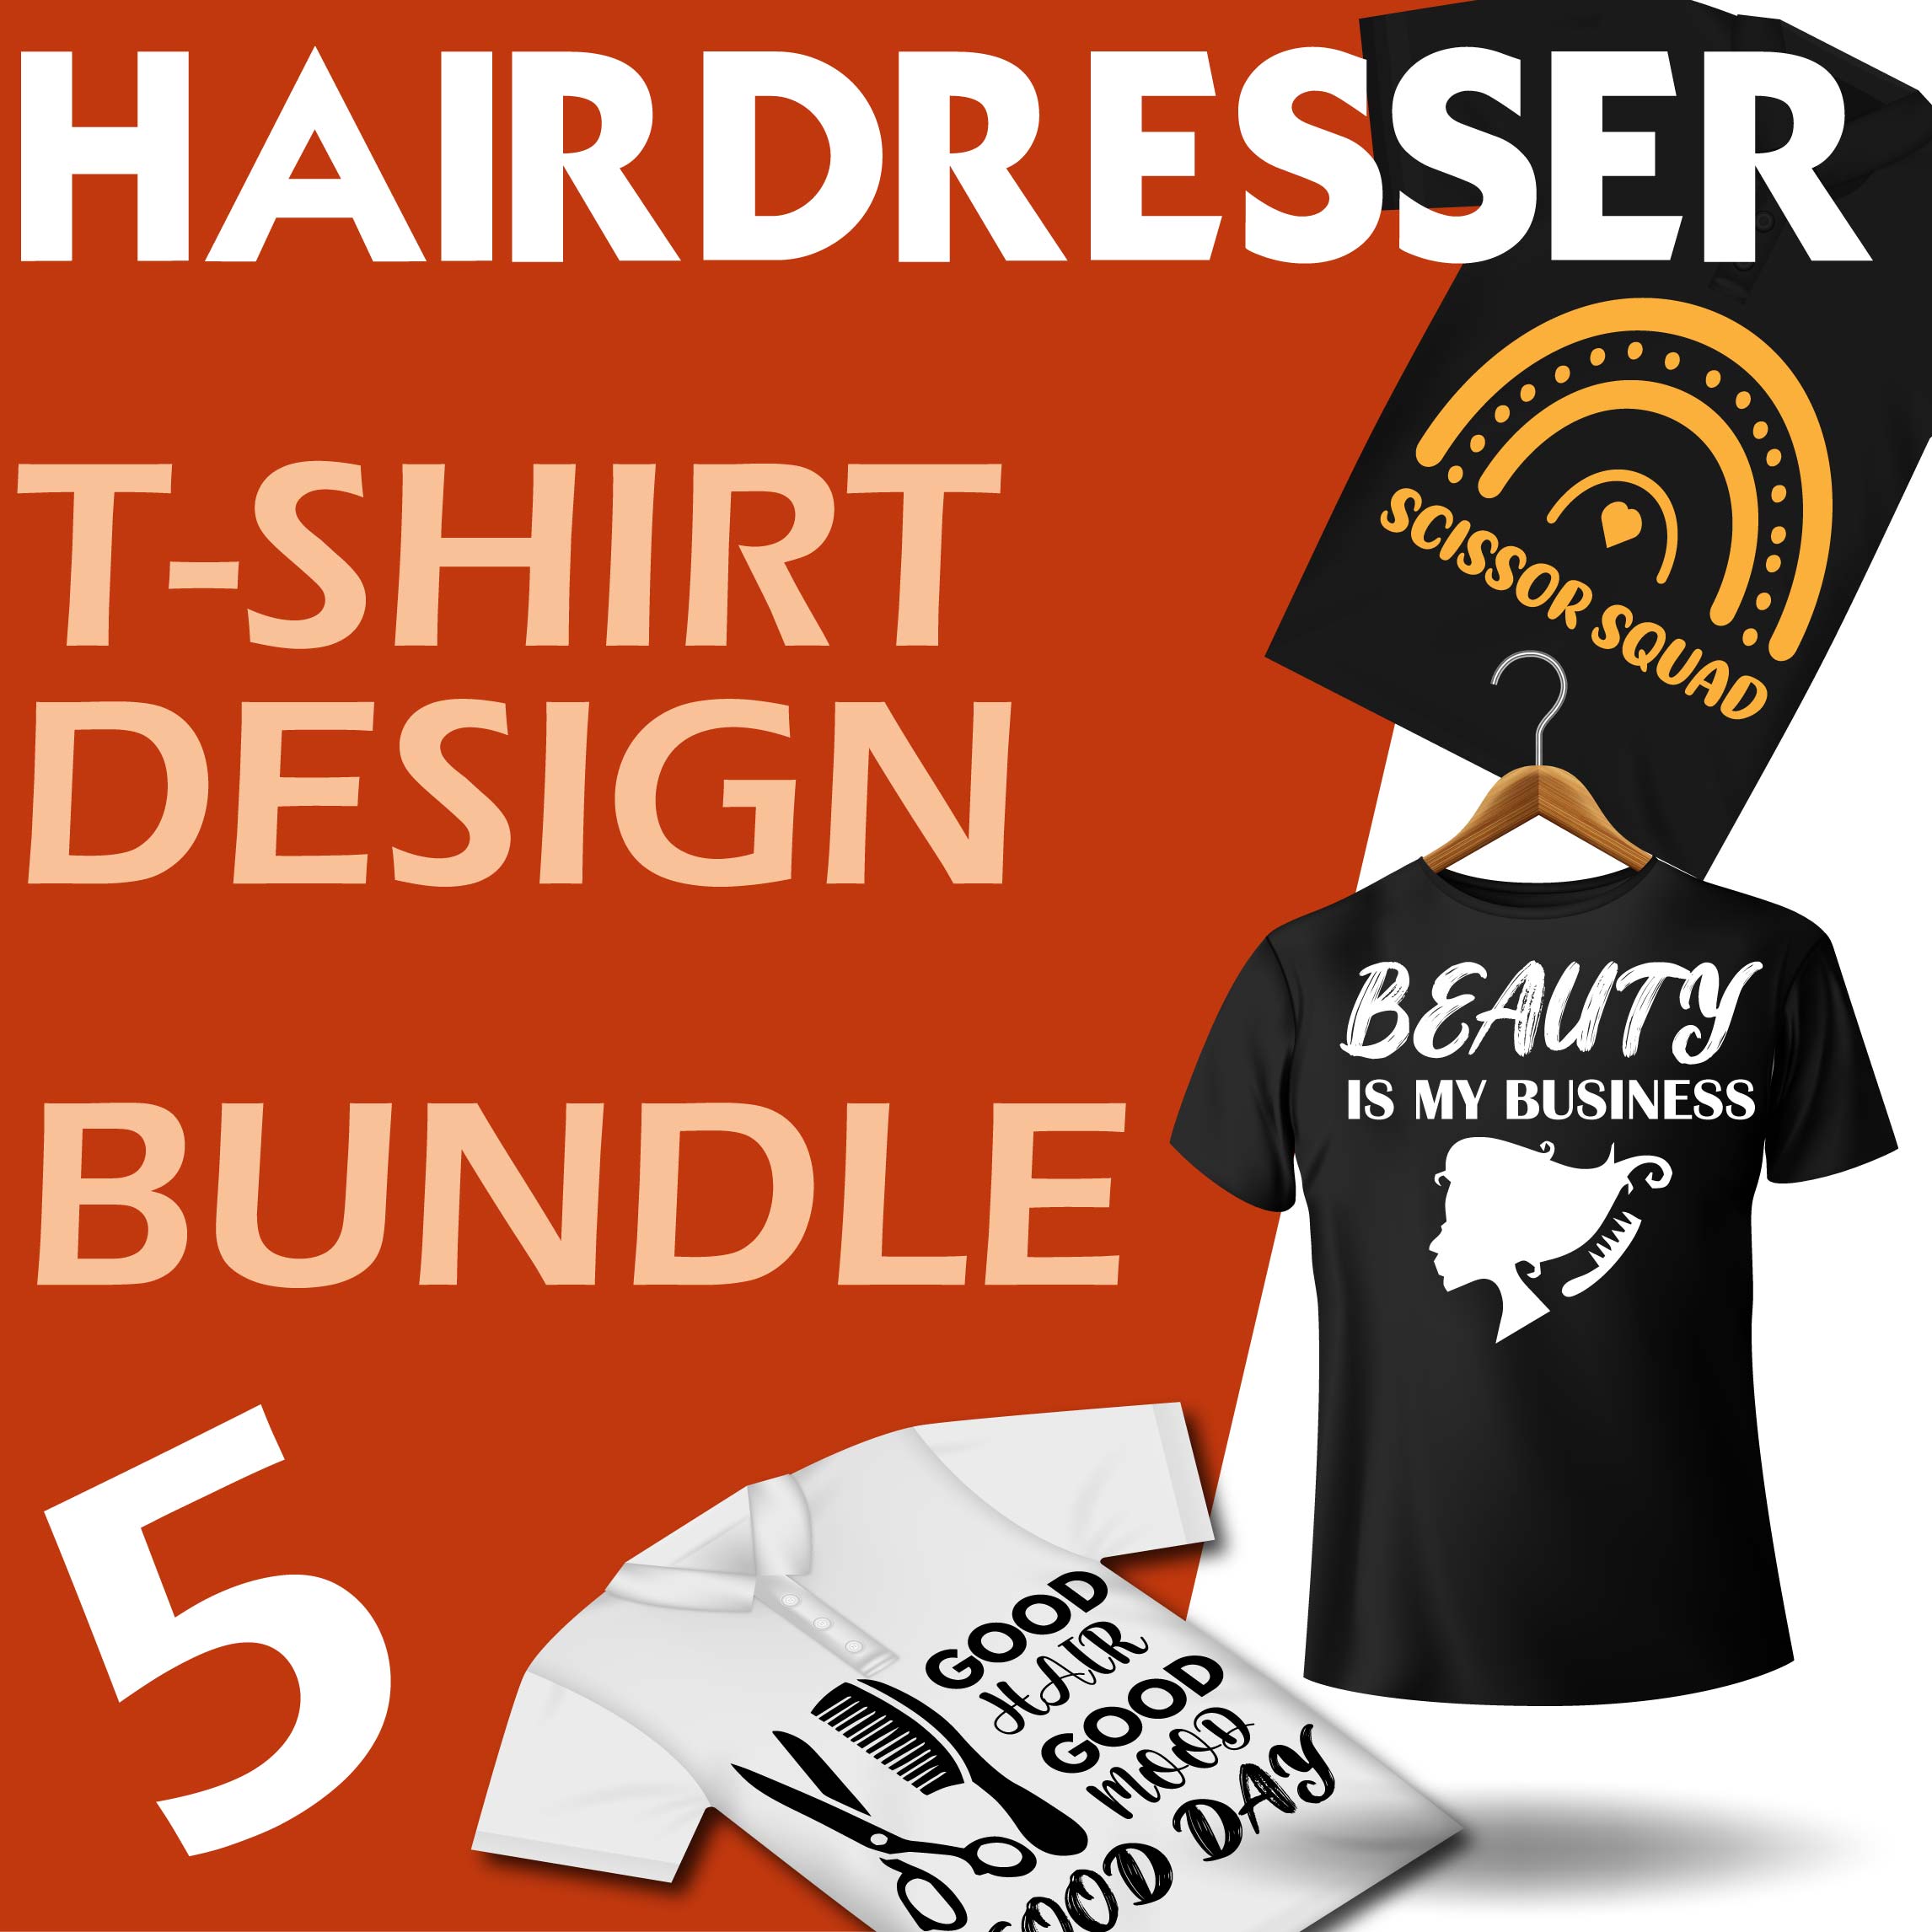 5 Hairdresser t-shirt designs bundle cover image.